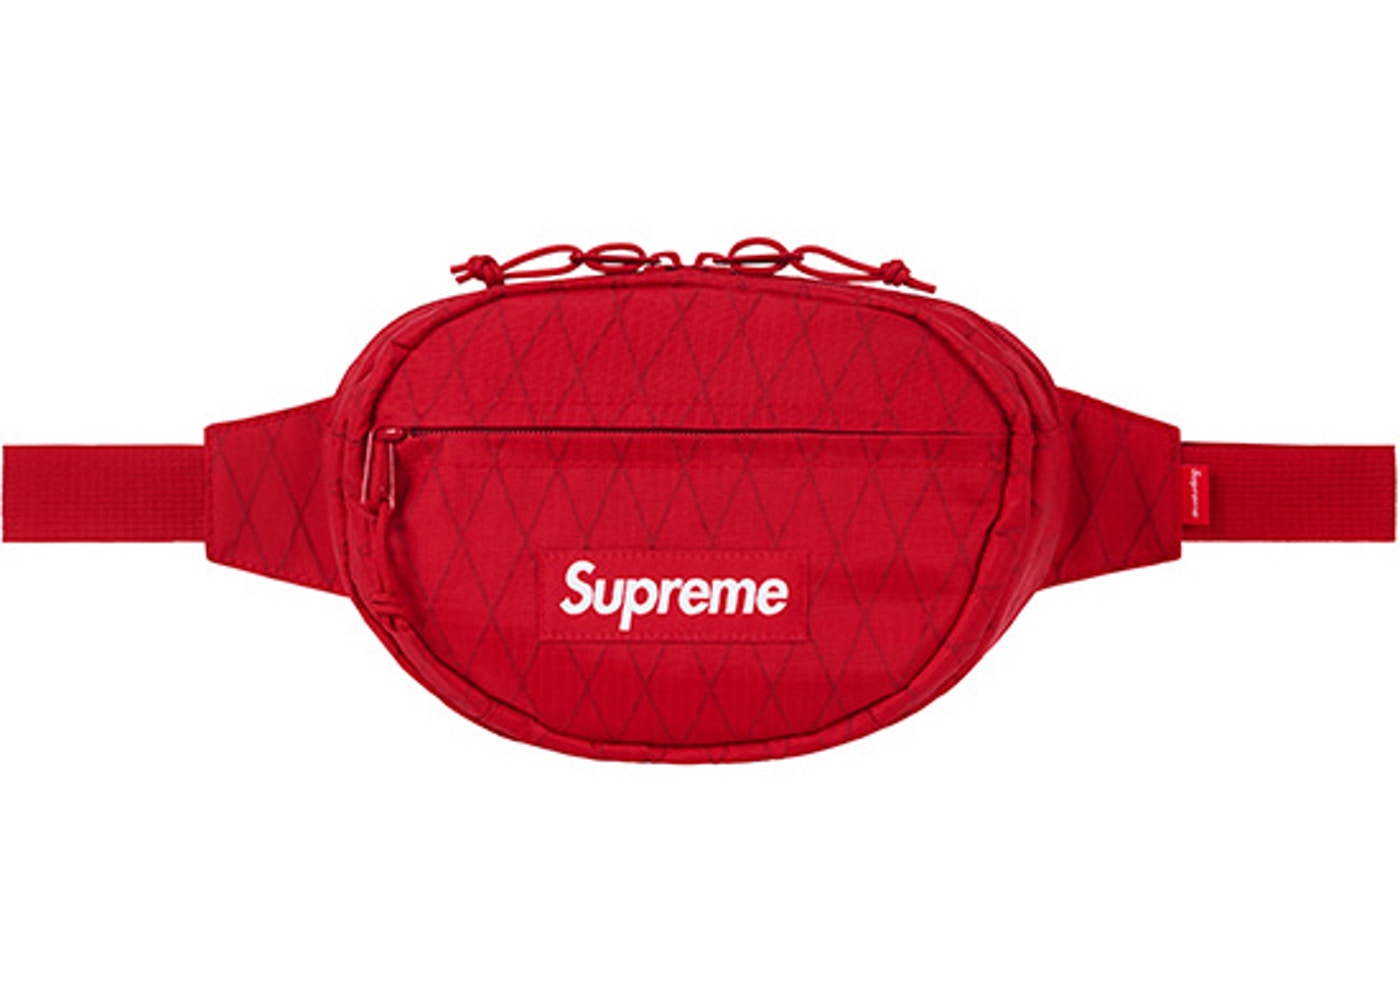 Supreme Waist Bag (FW18) Red - StockX News